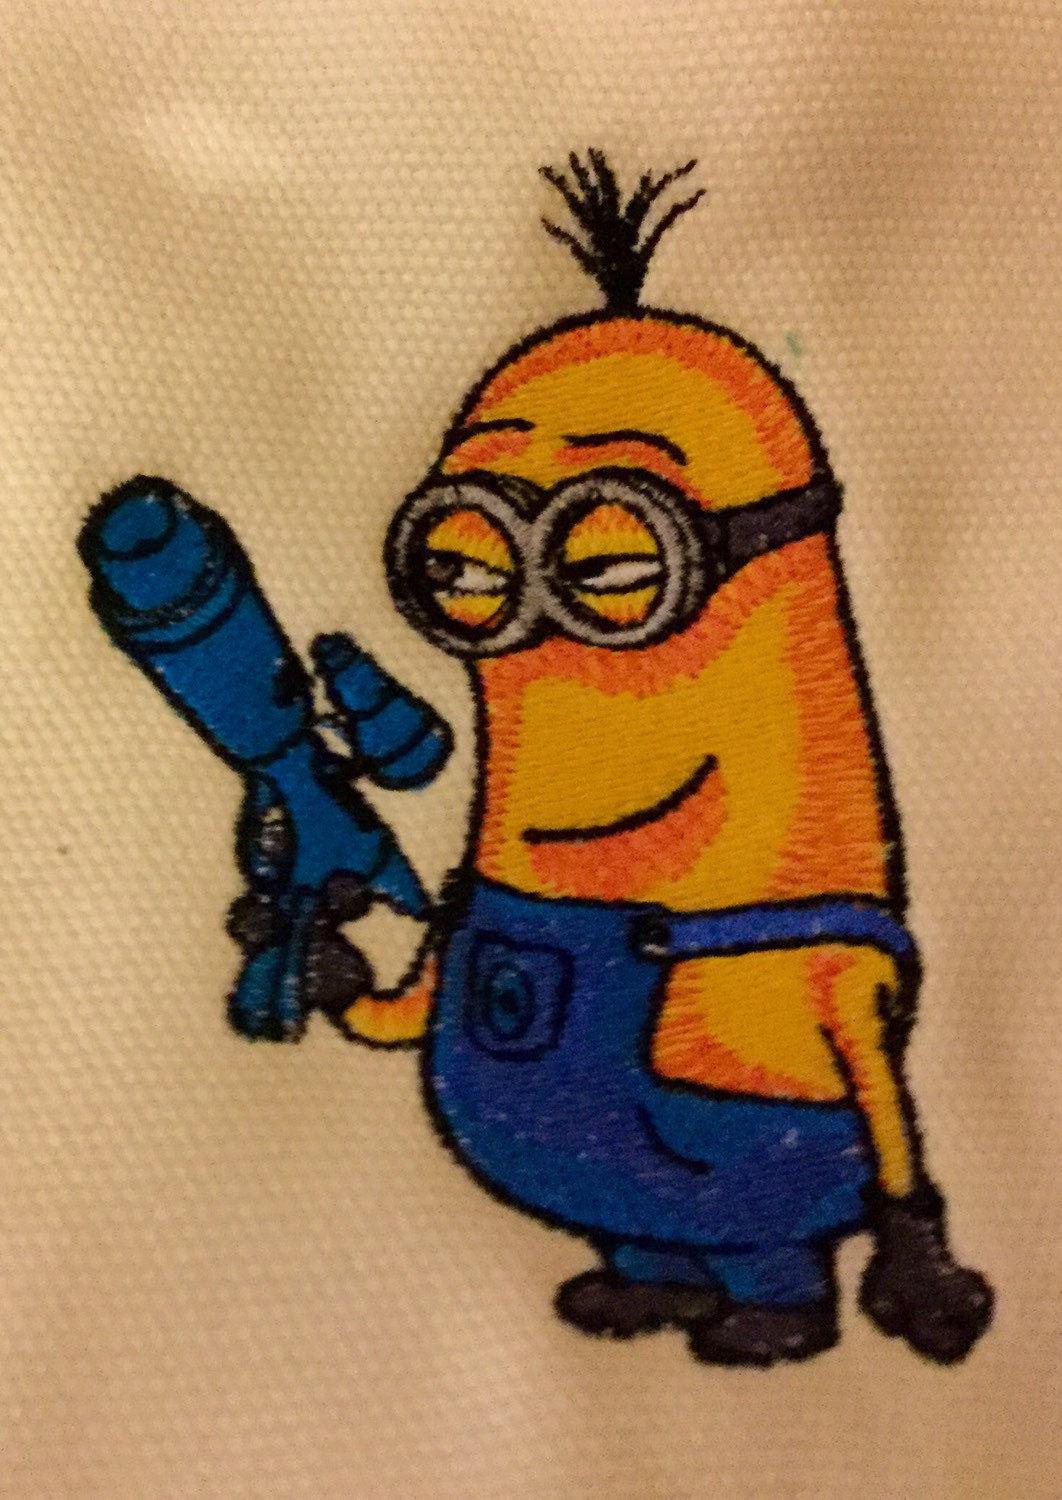 Minion with gun embroidery design